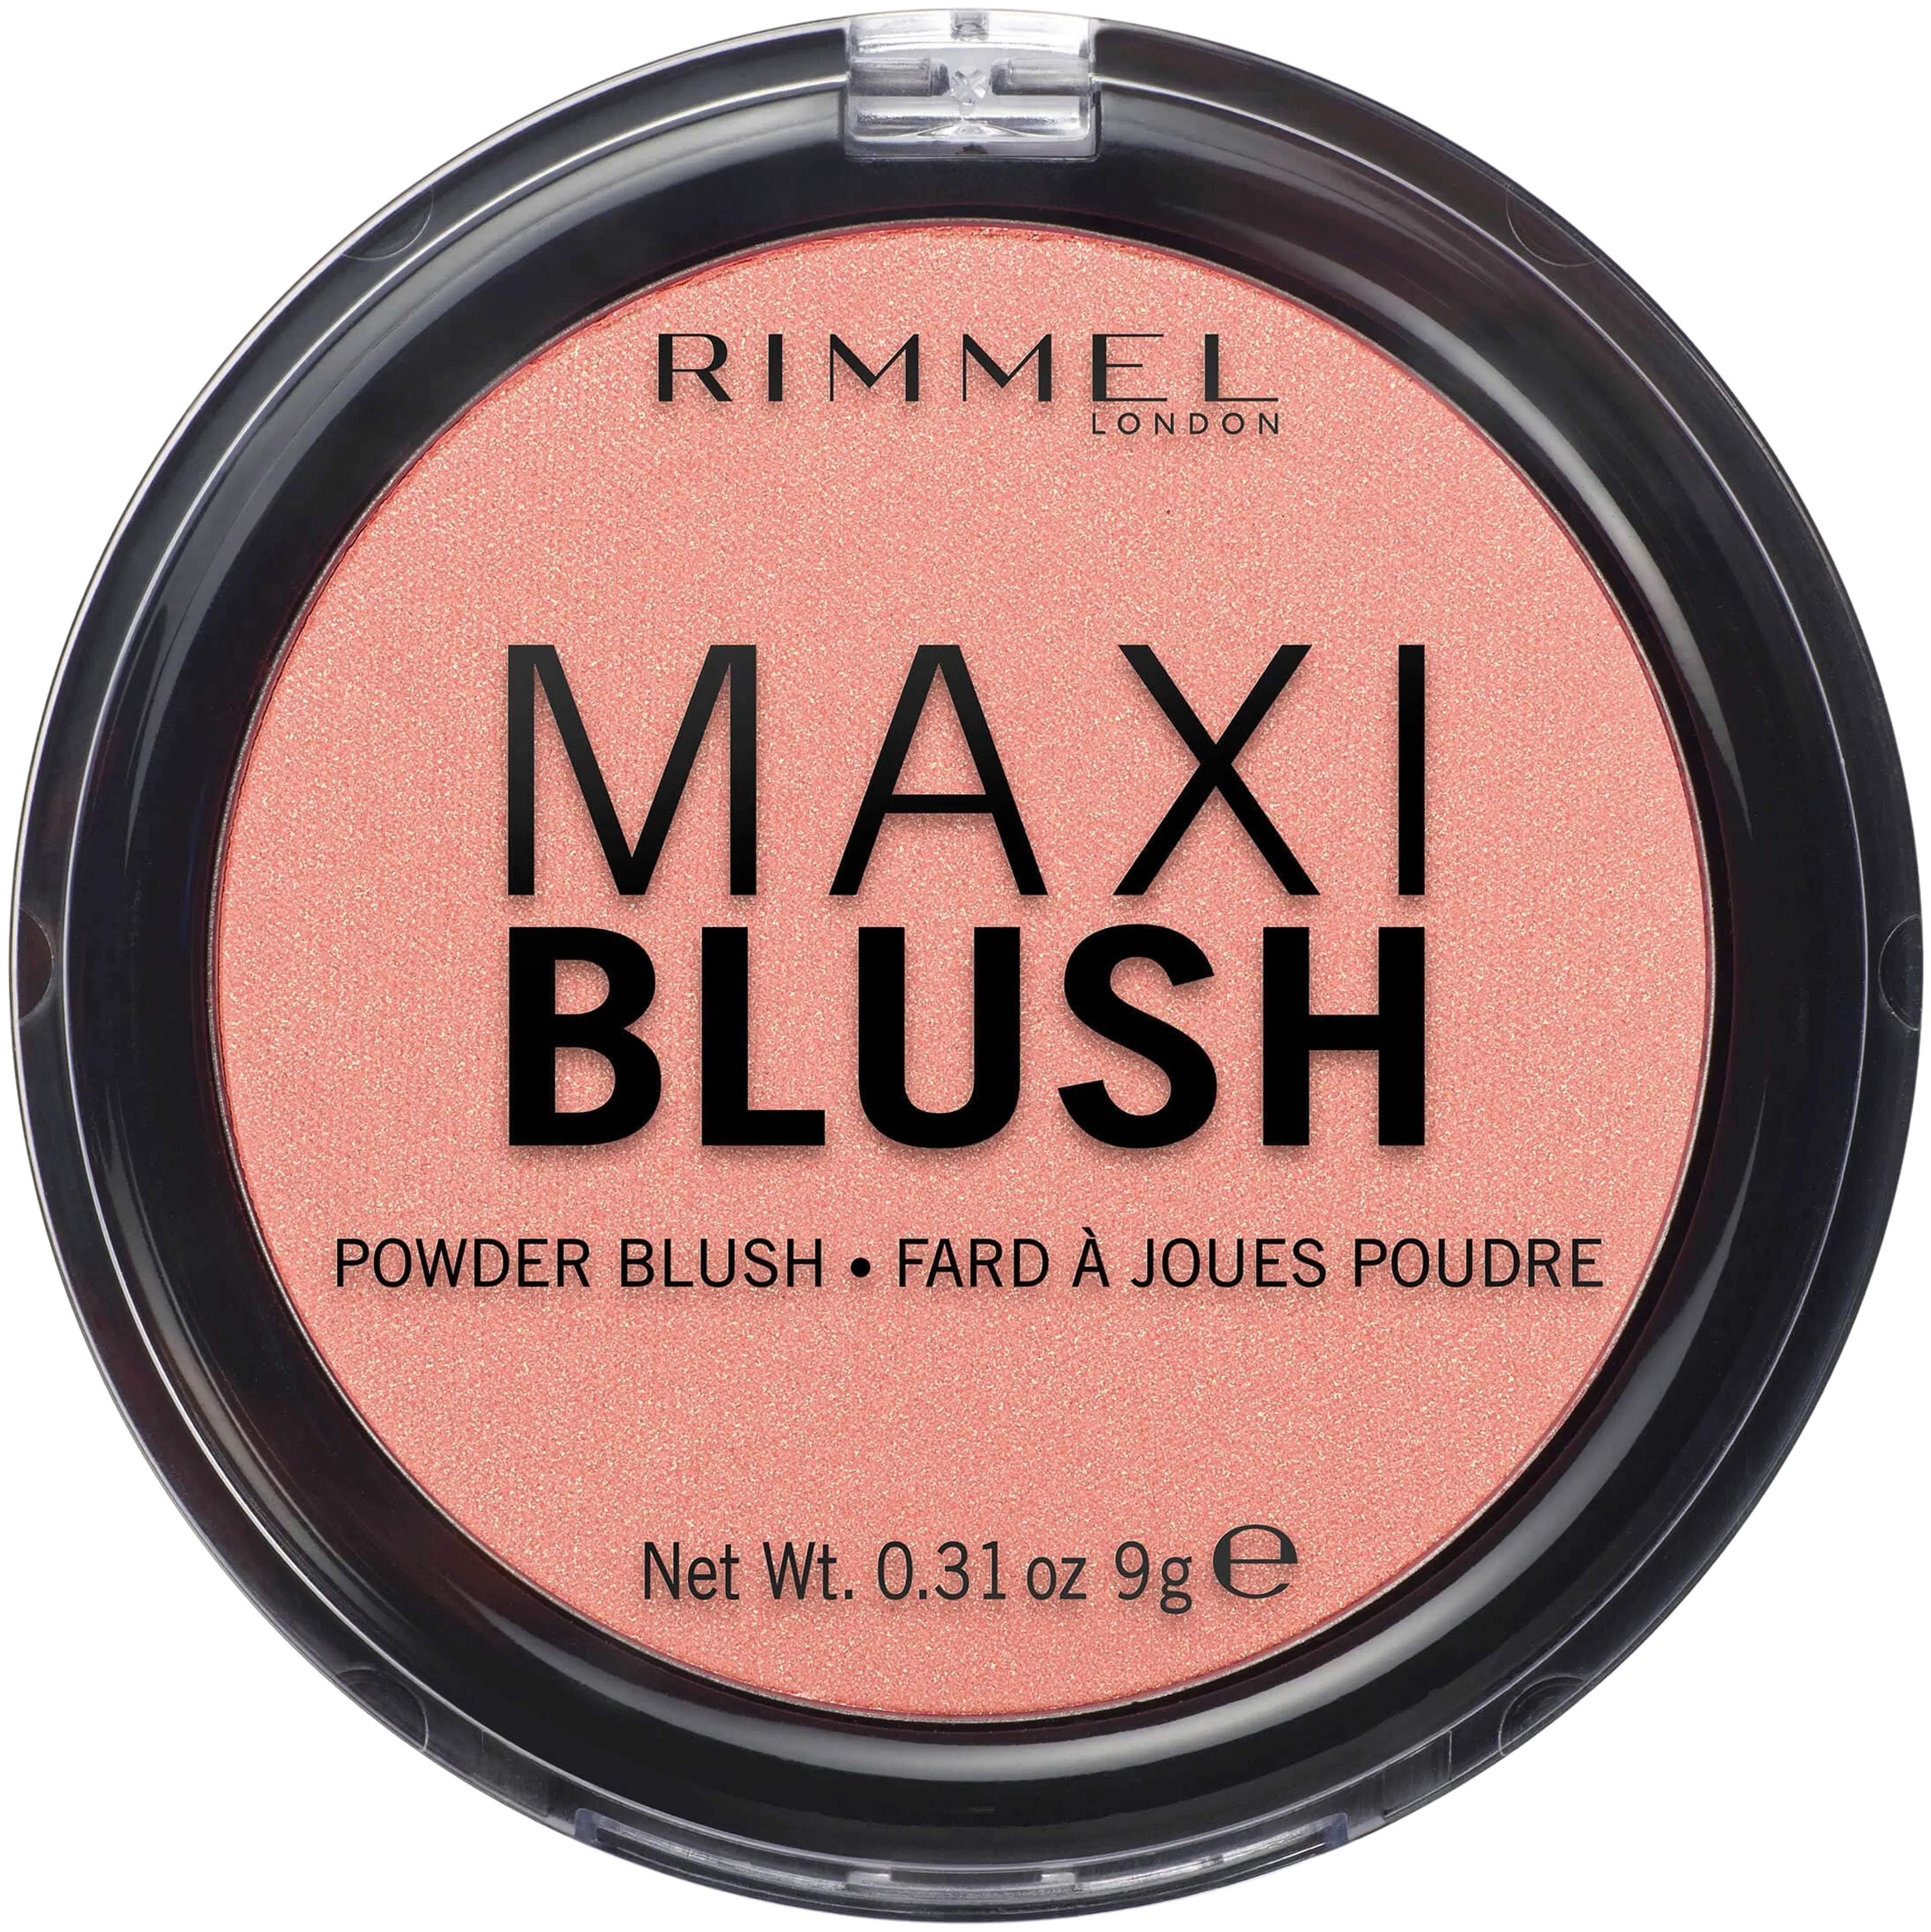 Rimmel Maxi Blush Powder Blusher 001 Third Base poskipuna 9g